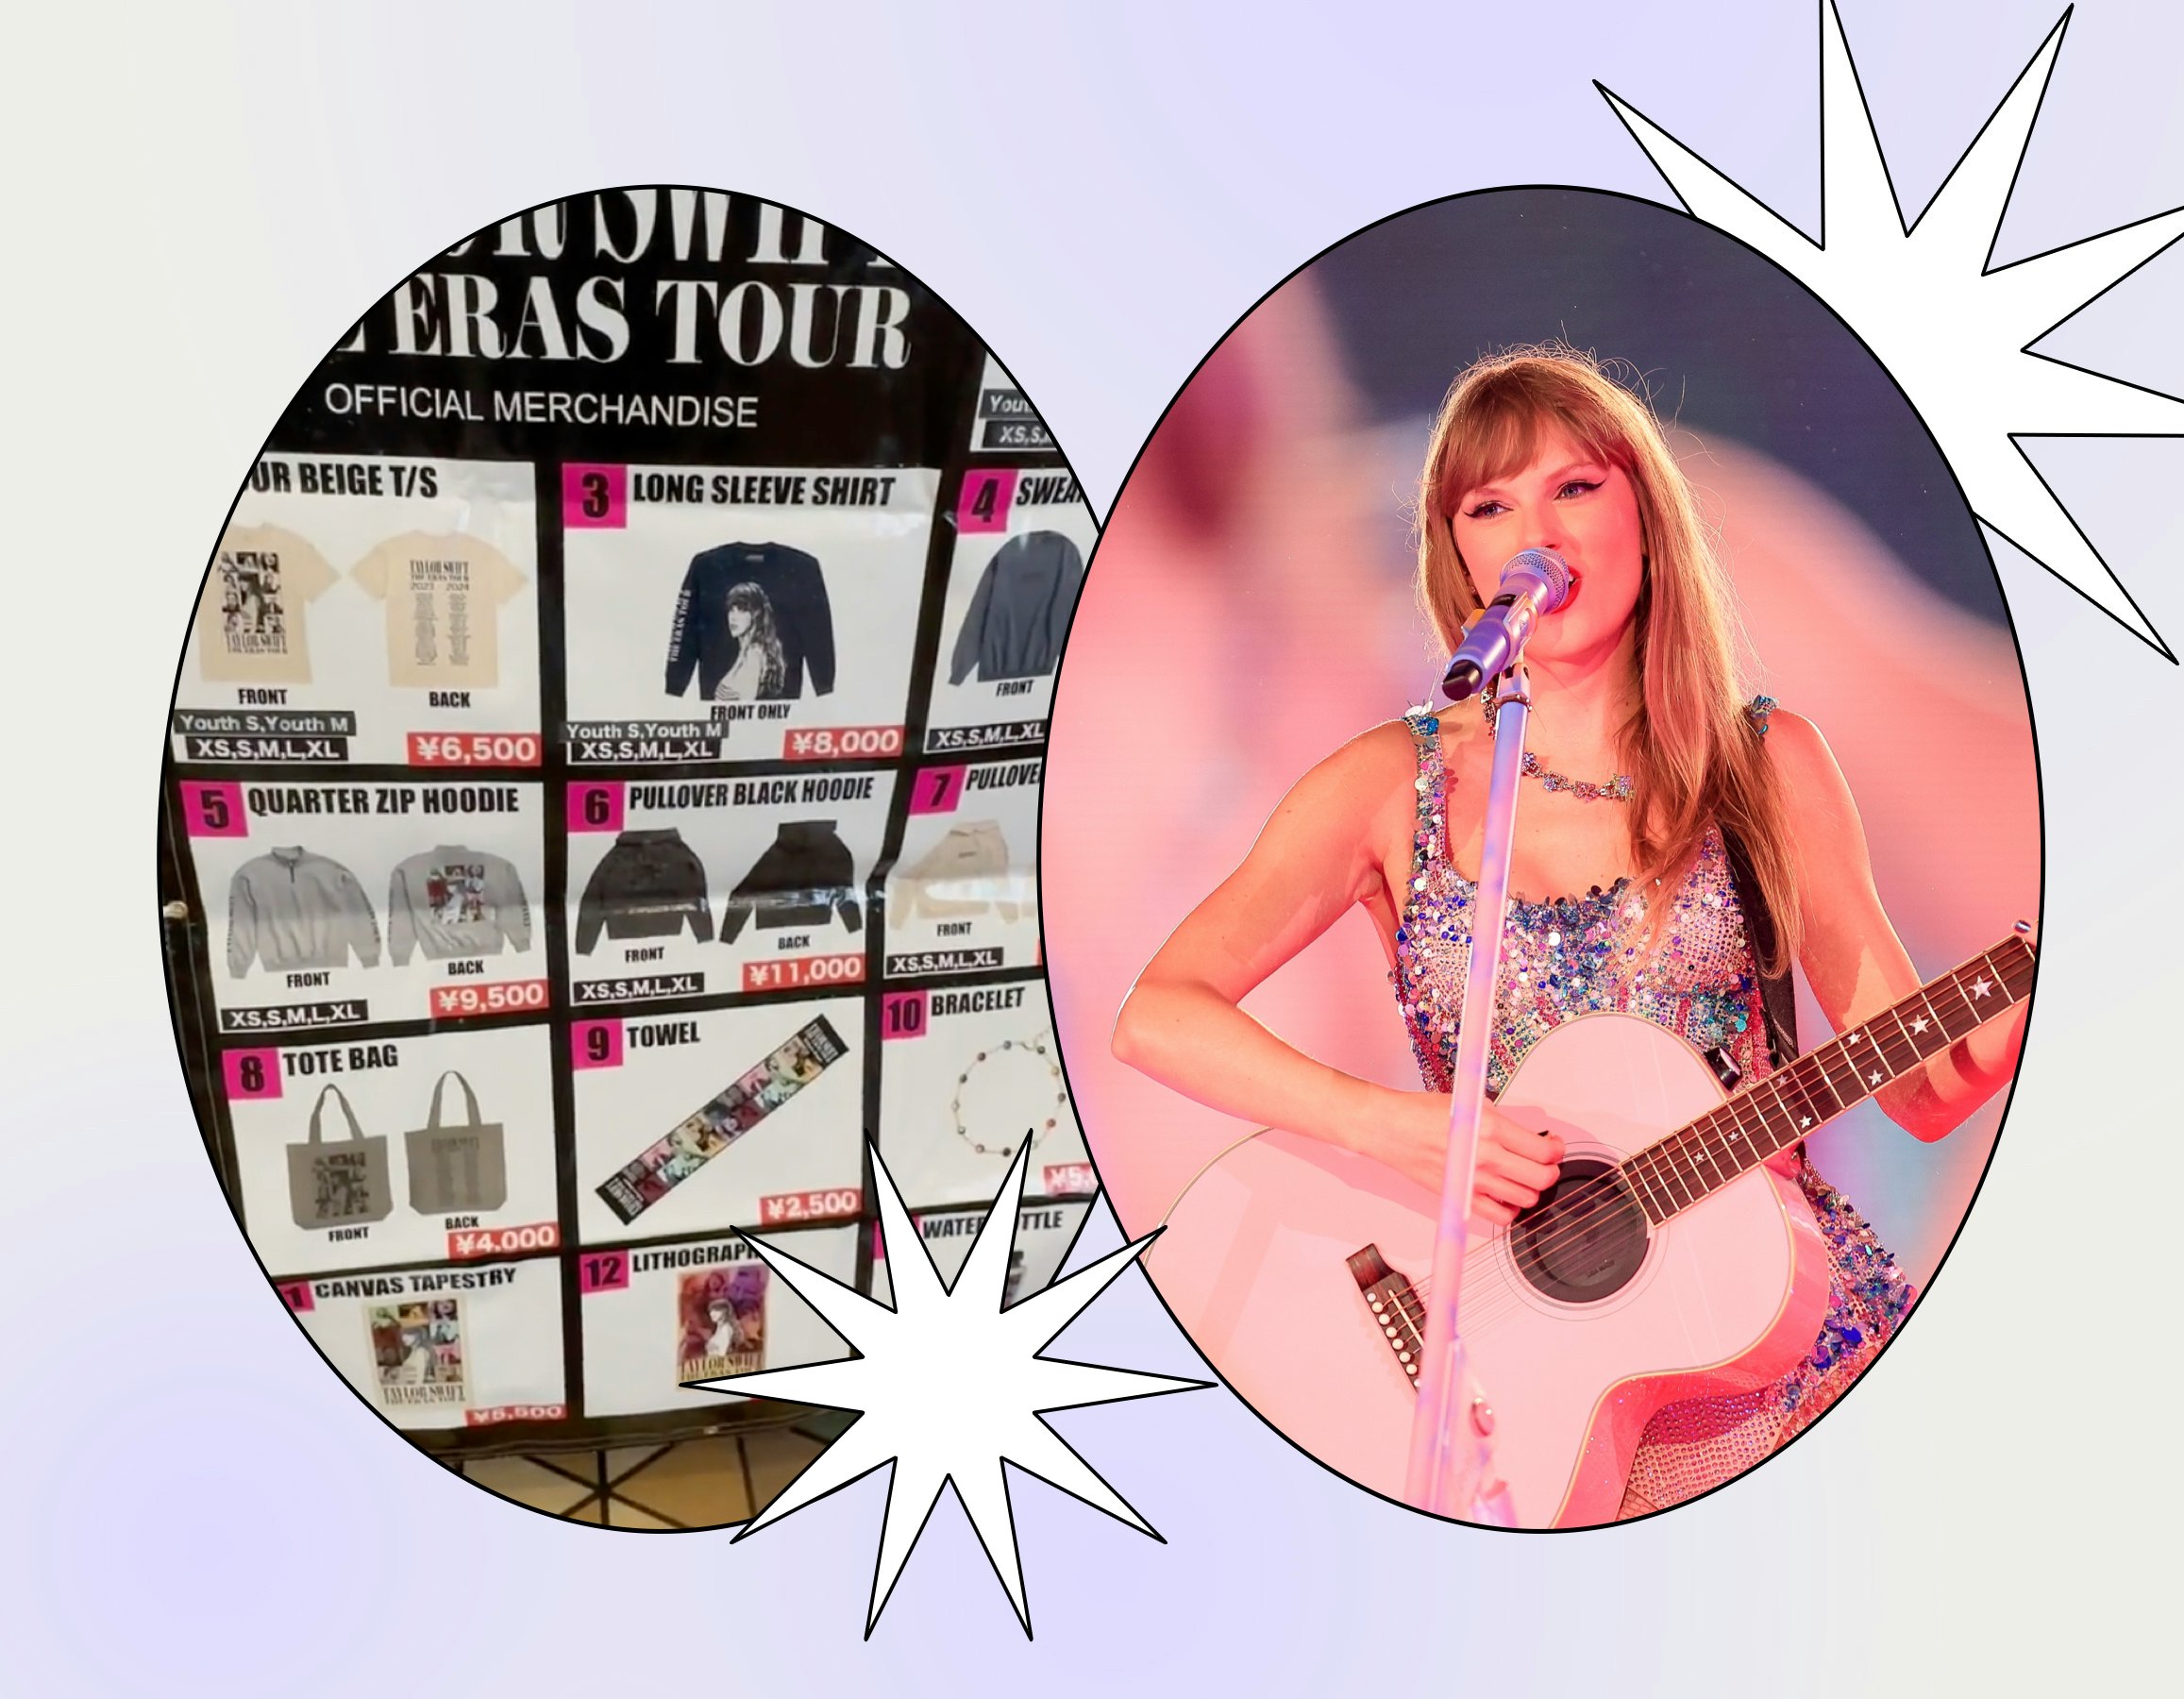 Taylor Swift Eras Tour Merch Truck In Tokyo: What's Worth The Wait?